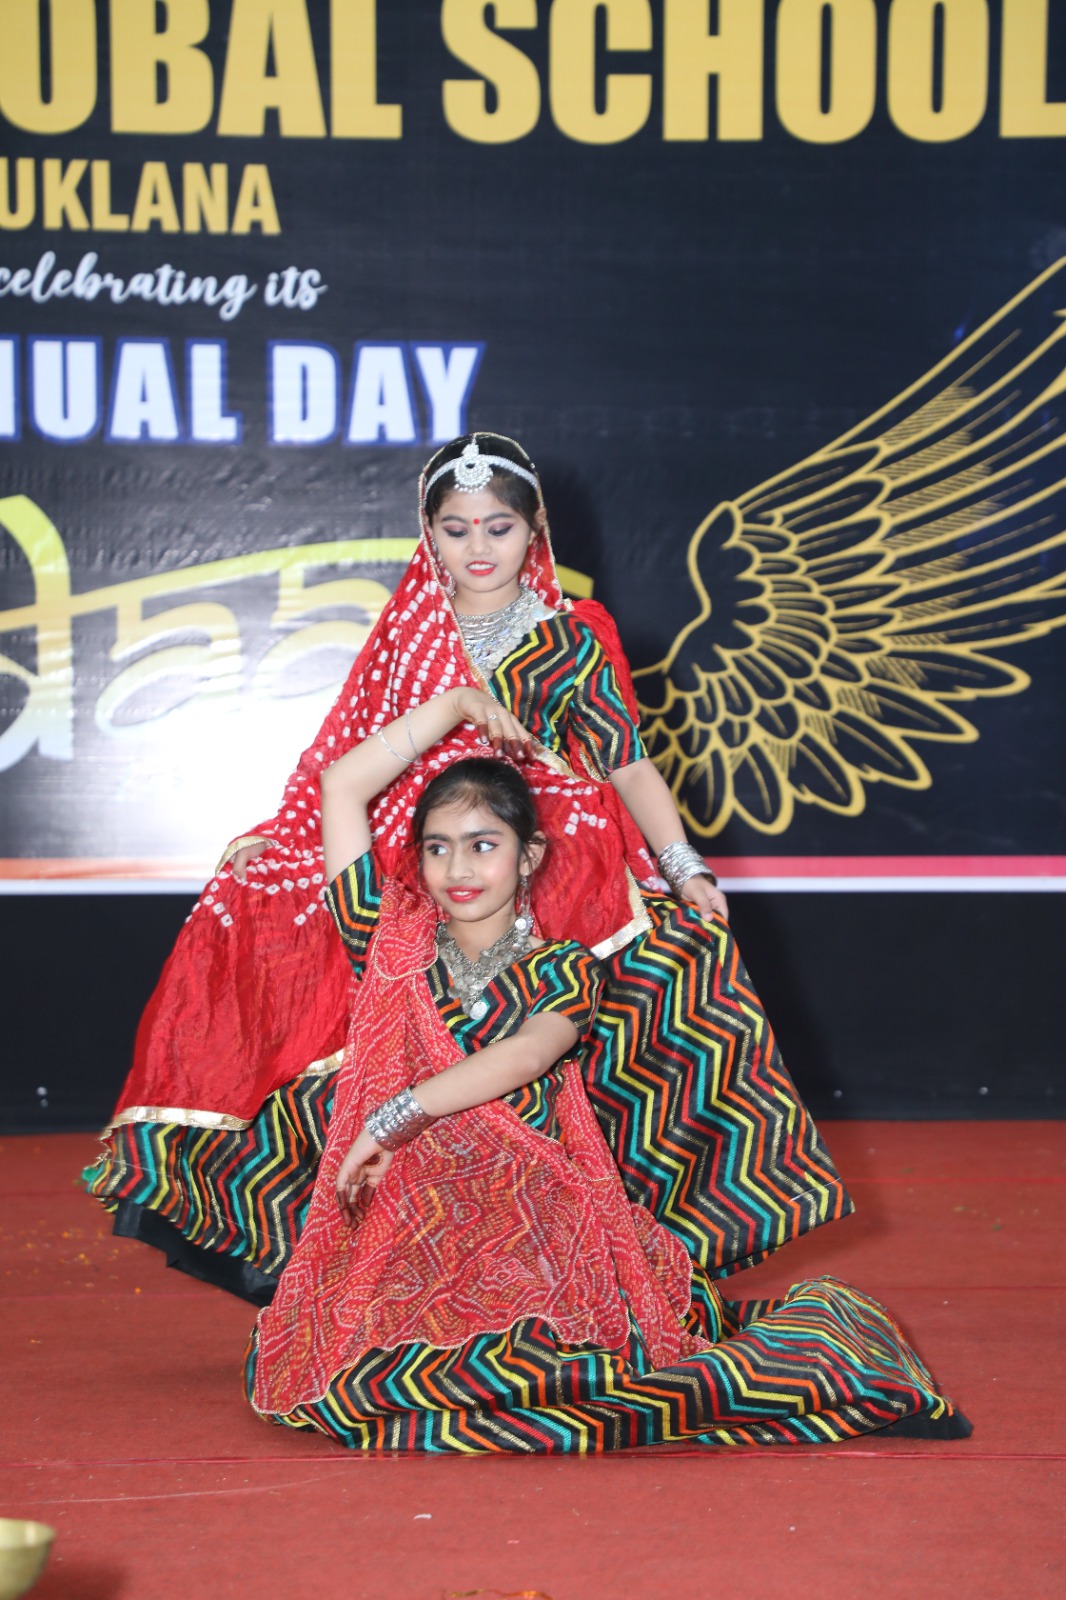 रंगारंग सांस्कृतिक कार्यक्रमों के साथ मनाया गया आक्सफोर्ड ग्लोबल स्कूल उकलाना का वार्षिक समारोह